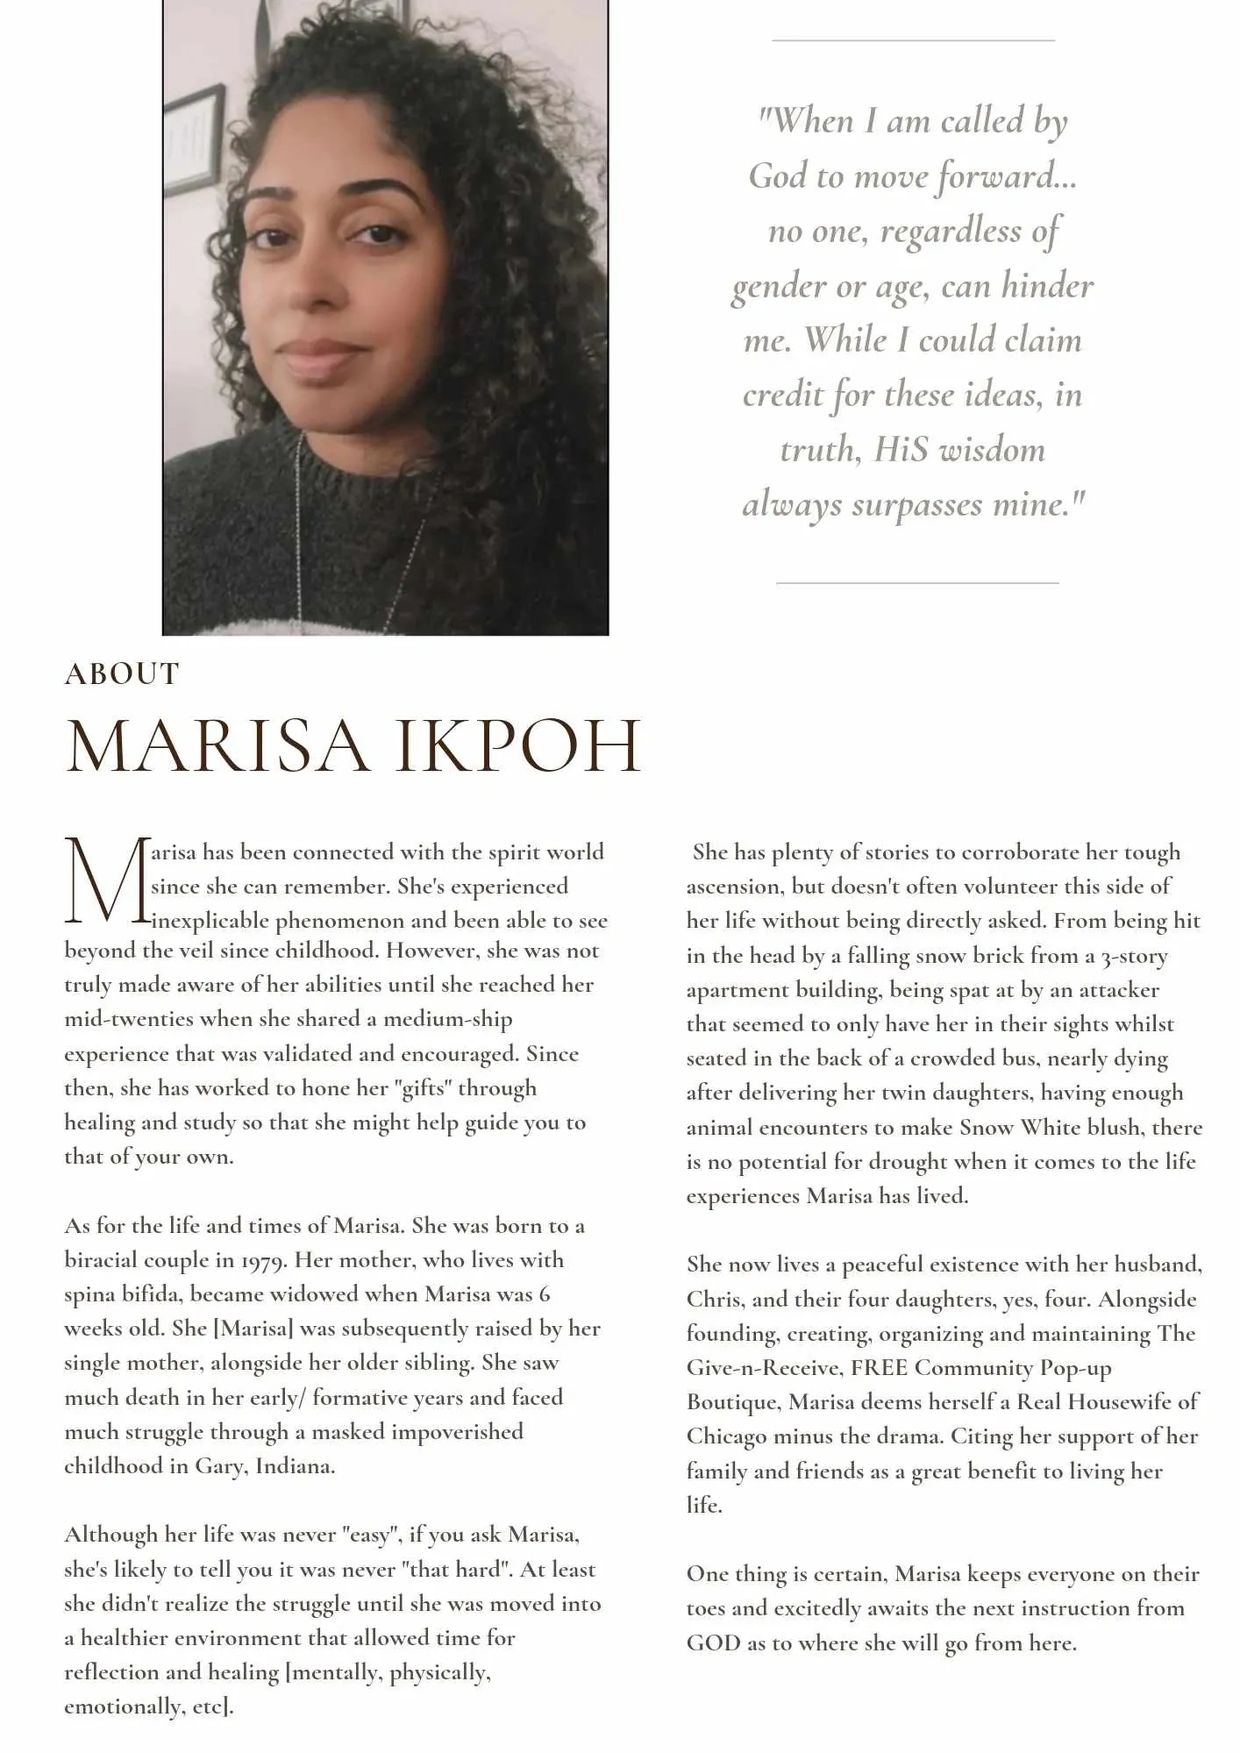 Mini biography of Marisa Ikpoh